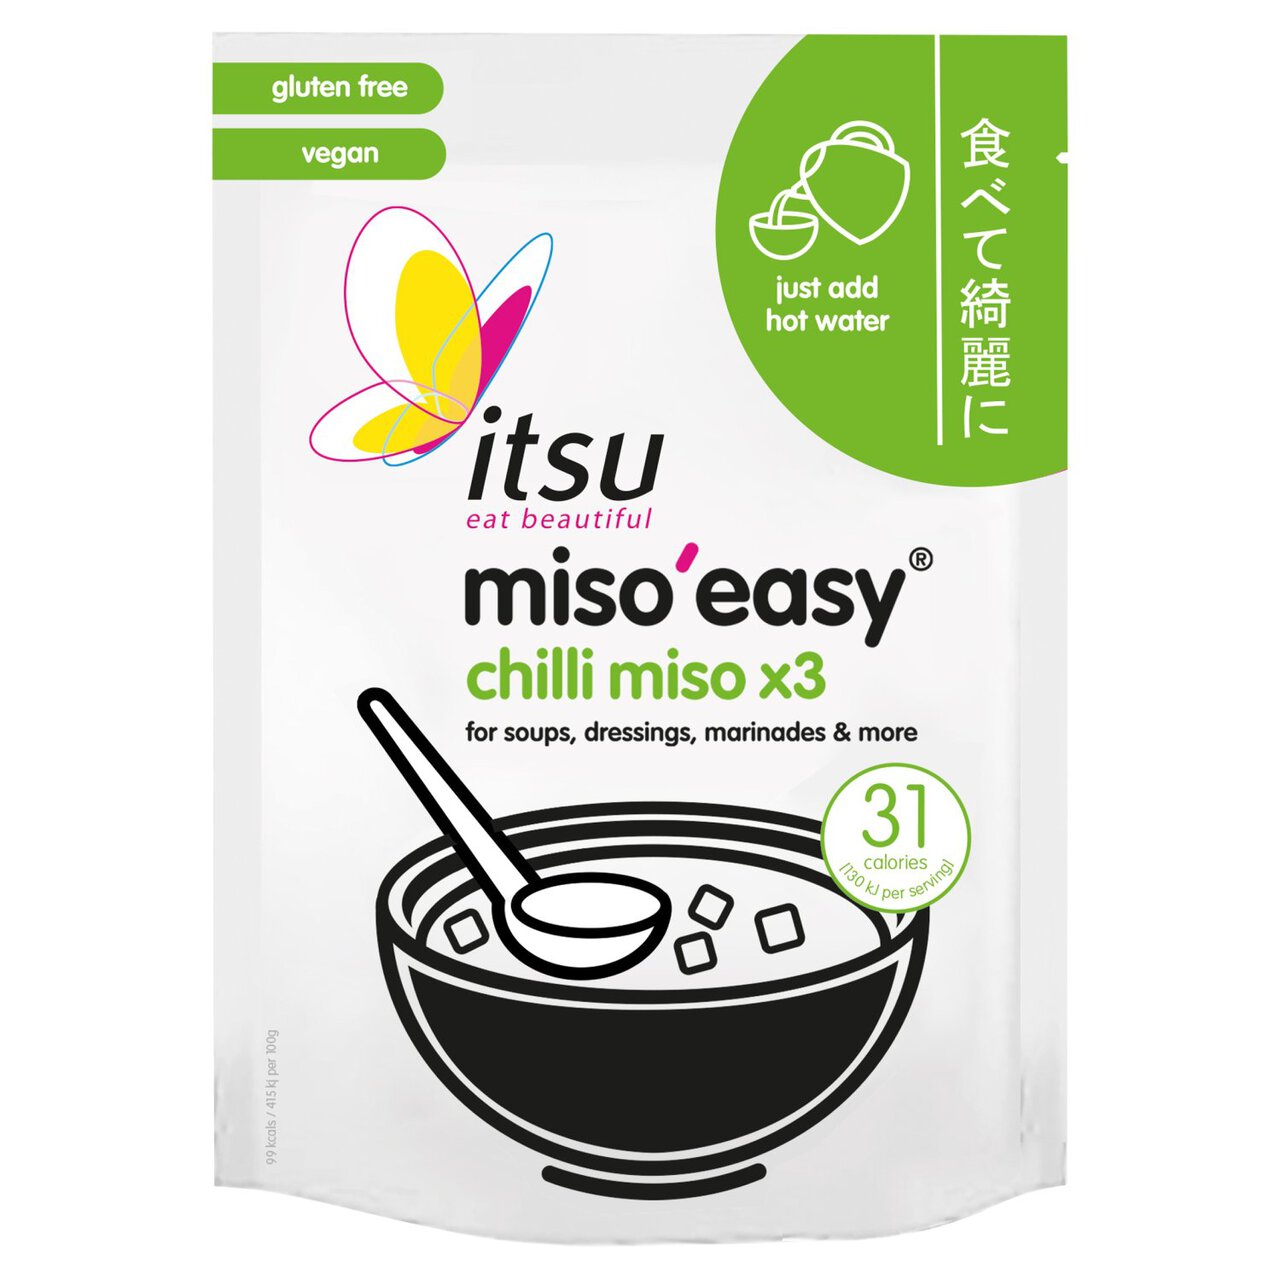 Itsu Miso'easy Chilli Miso 3 x 20g